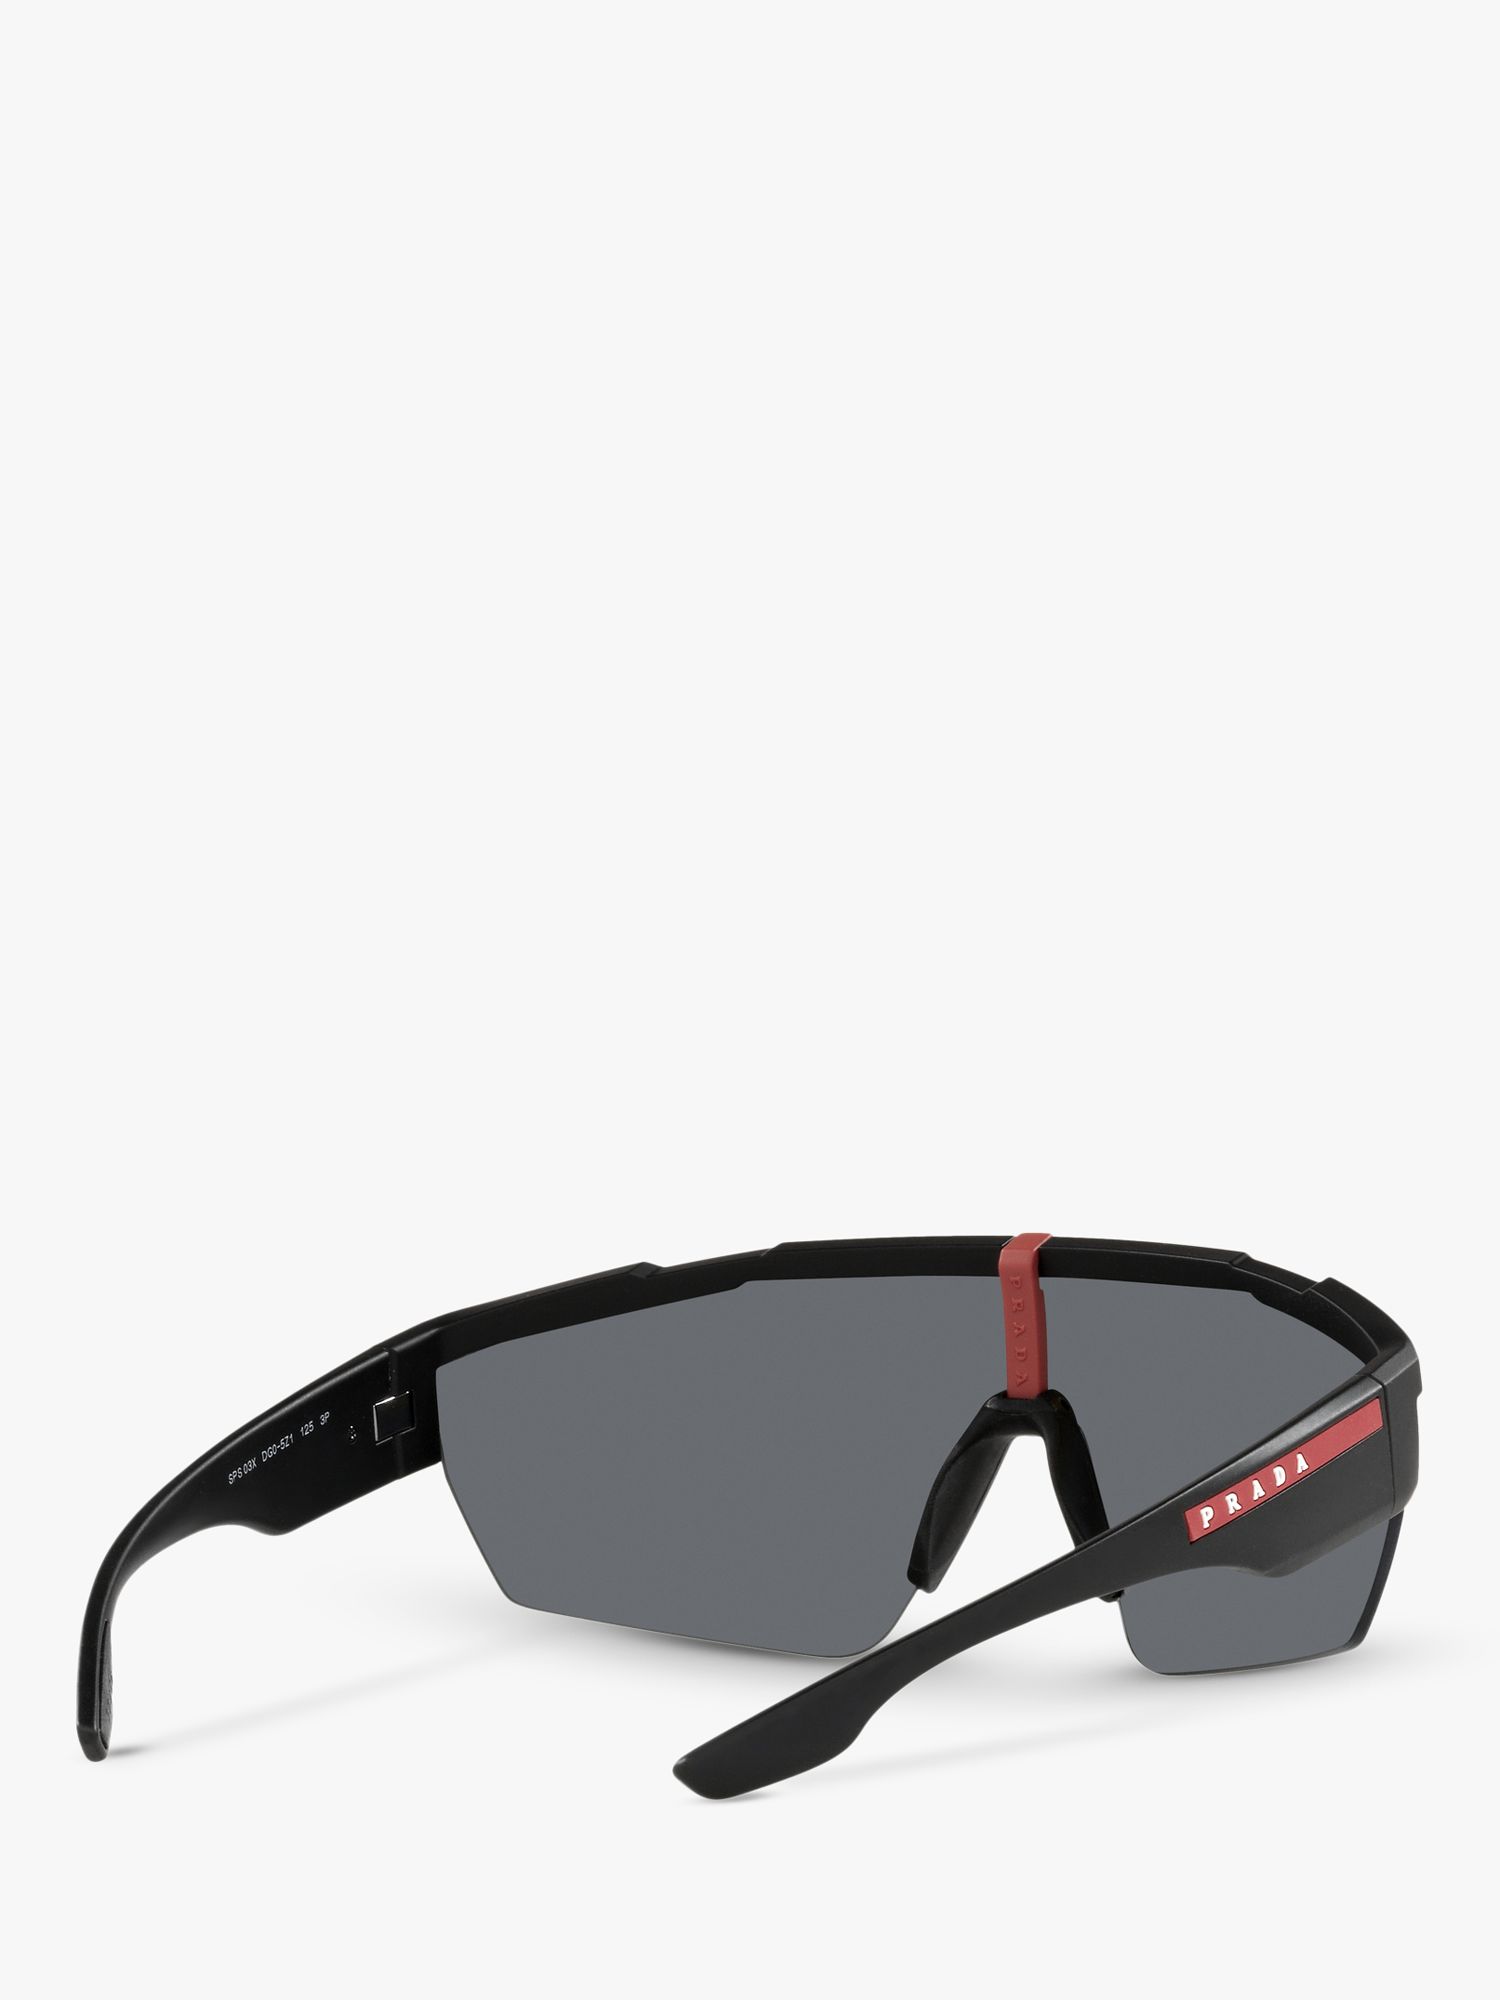 Buy Prada Linea Rossa PS 03XS Men's Polarised Sunglasses, Rubber Black Online at johnlewis.com